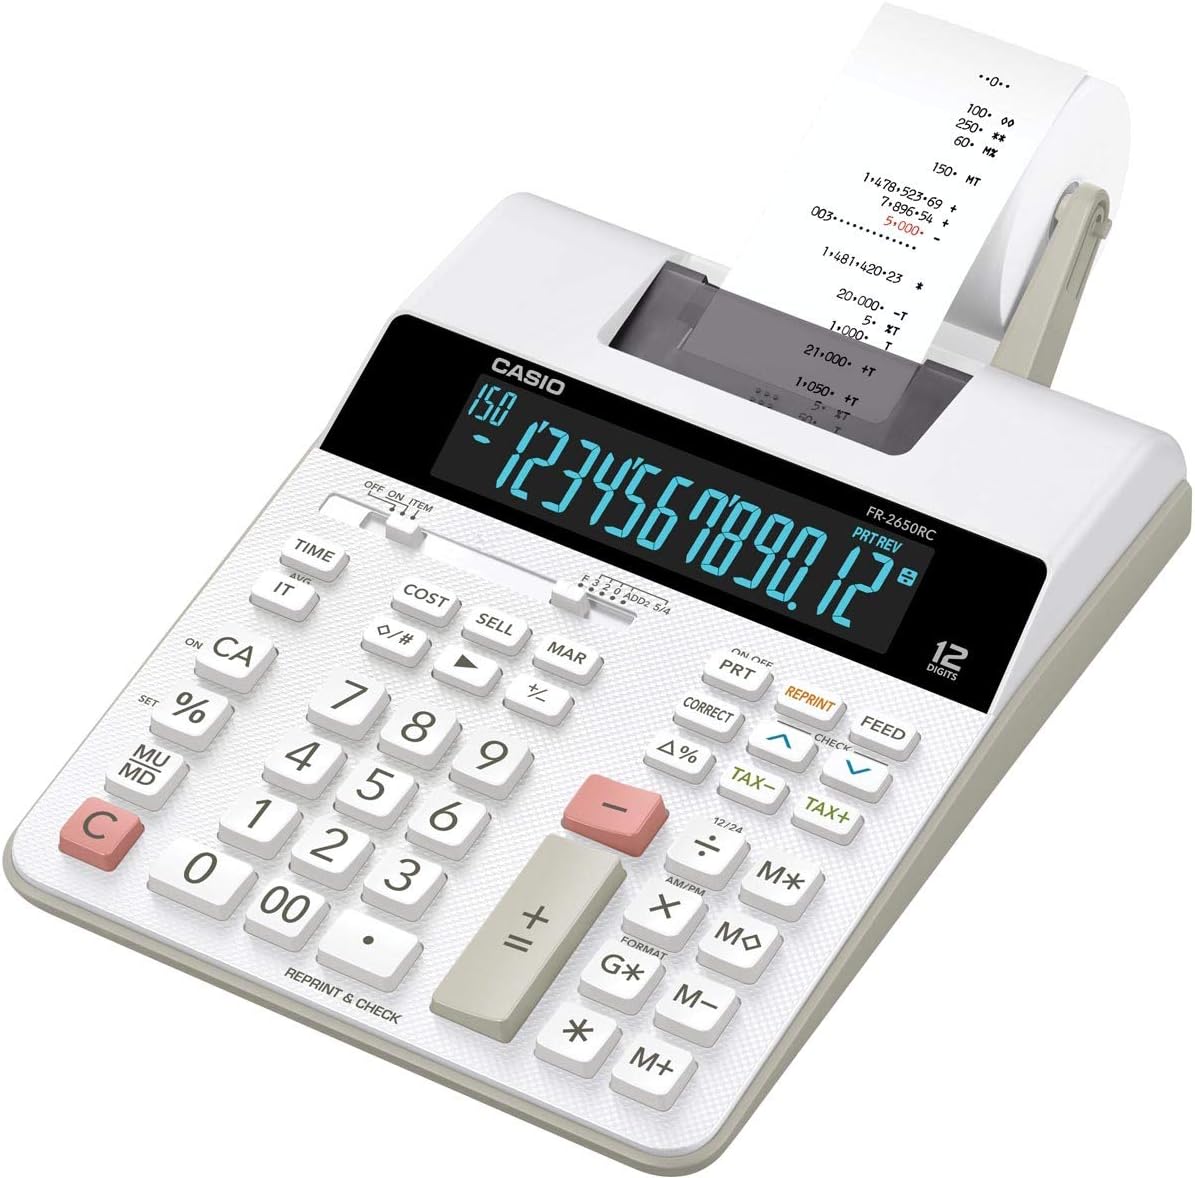 Imprimante de bureau calculatrice Casio FR-2650RC - Impression 2 couleurs - Écran 12 chiffres - Fonction horloge et calendrier - Couleur blanche